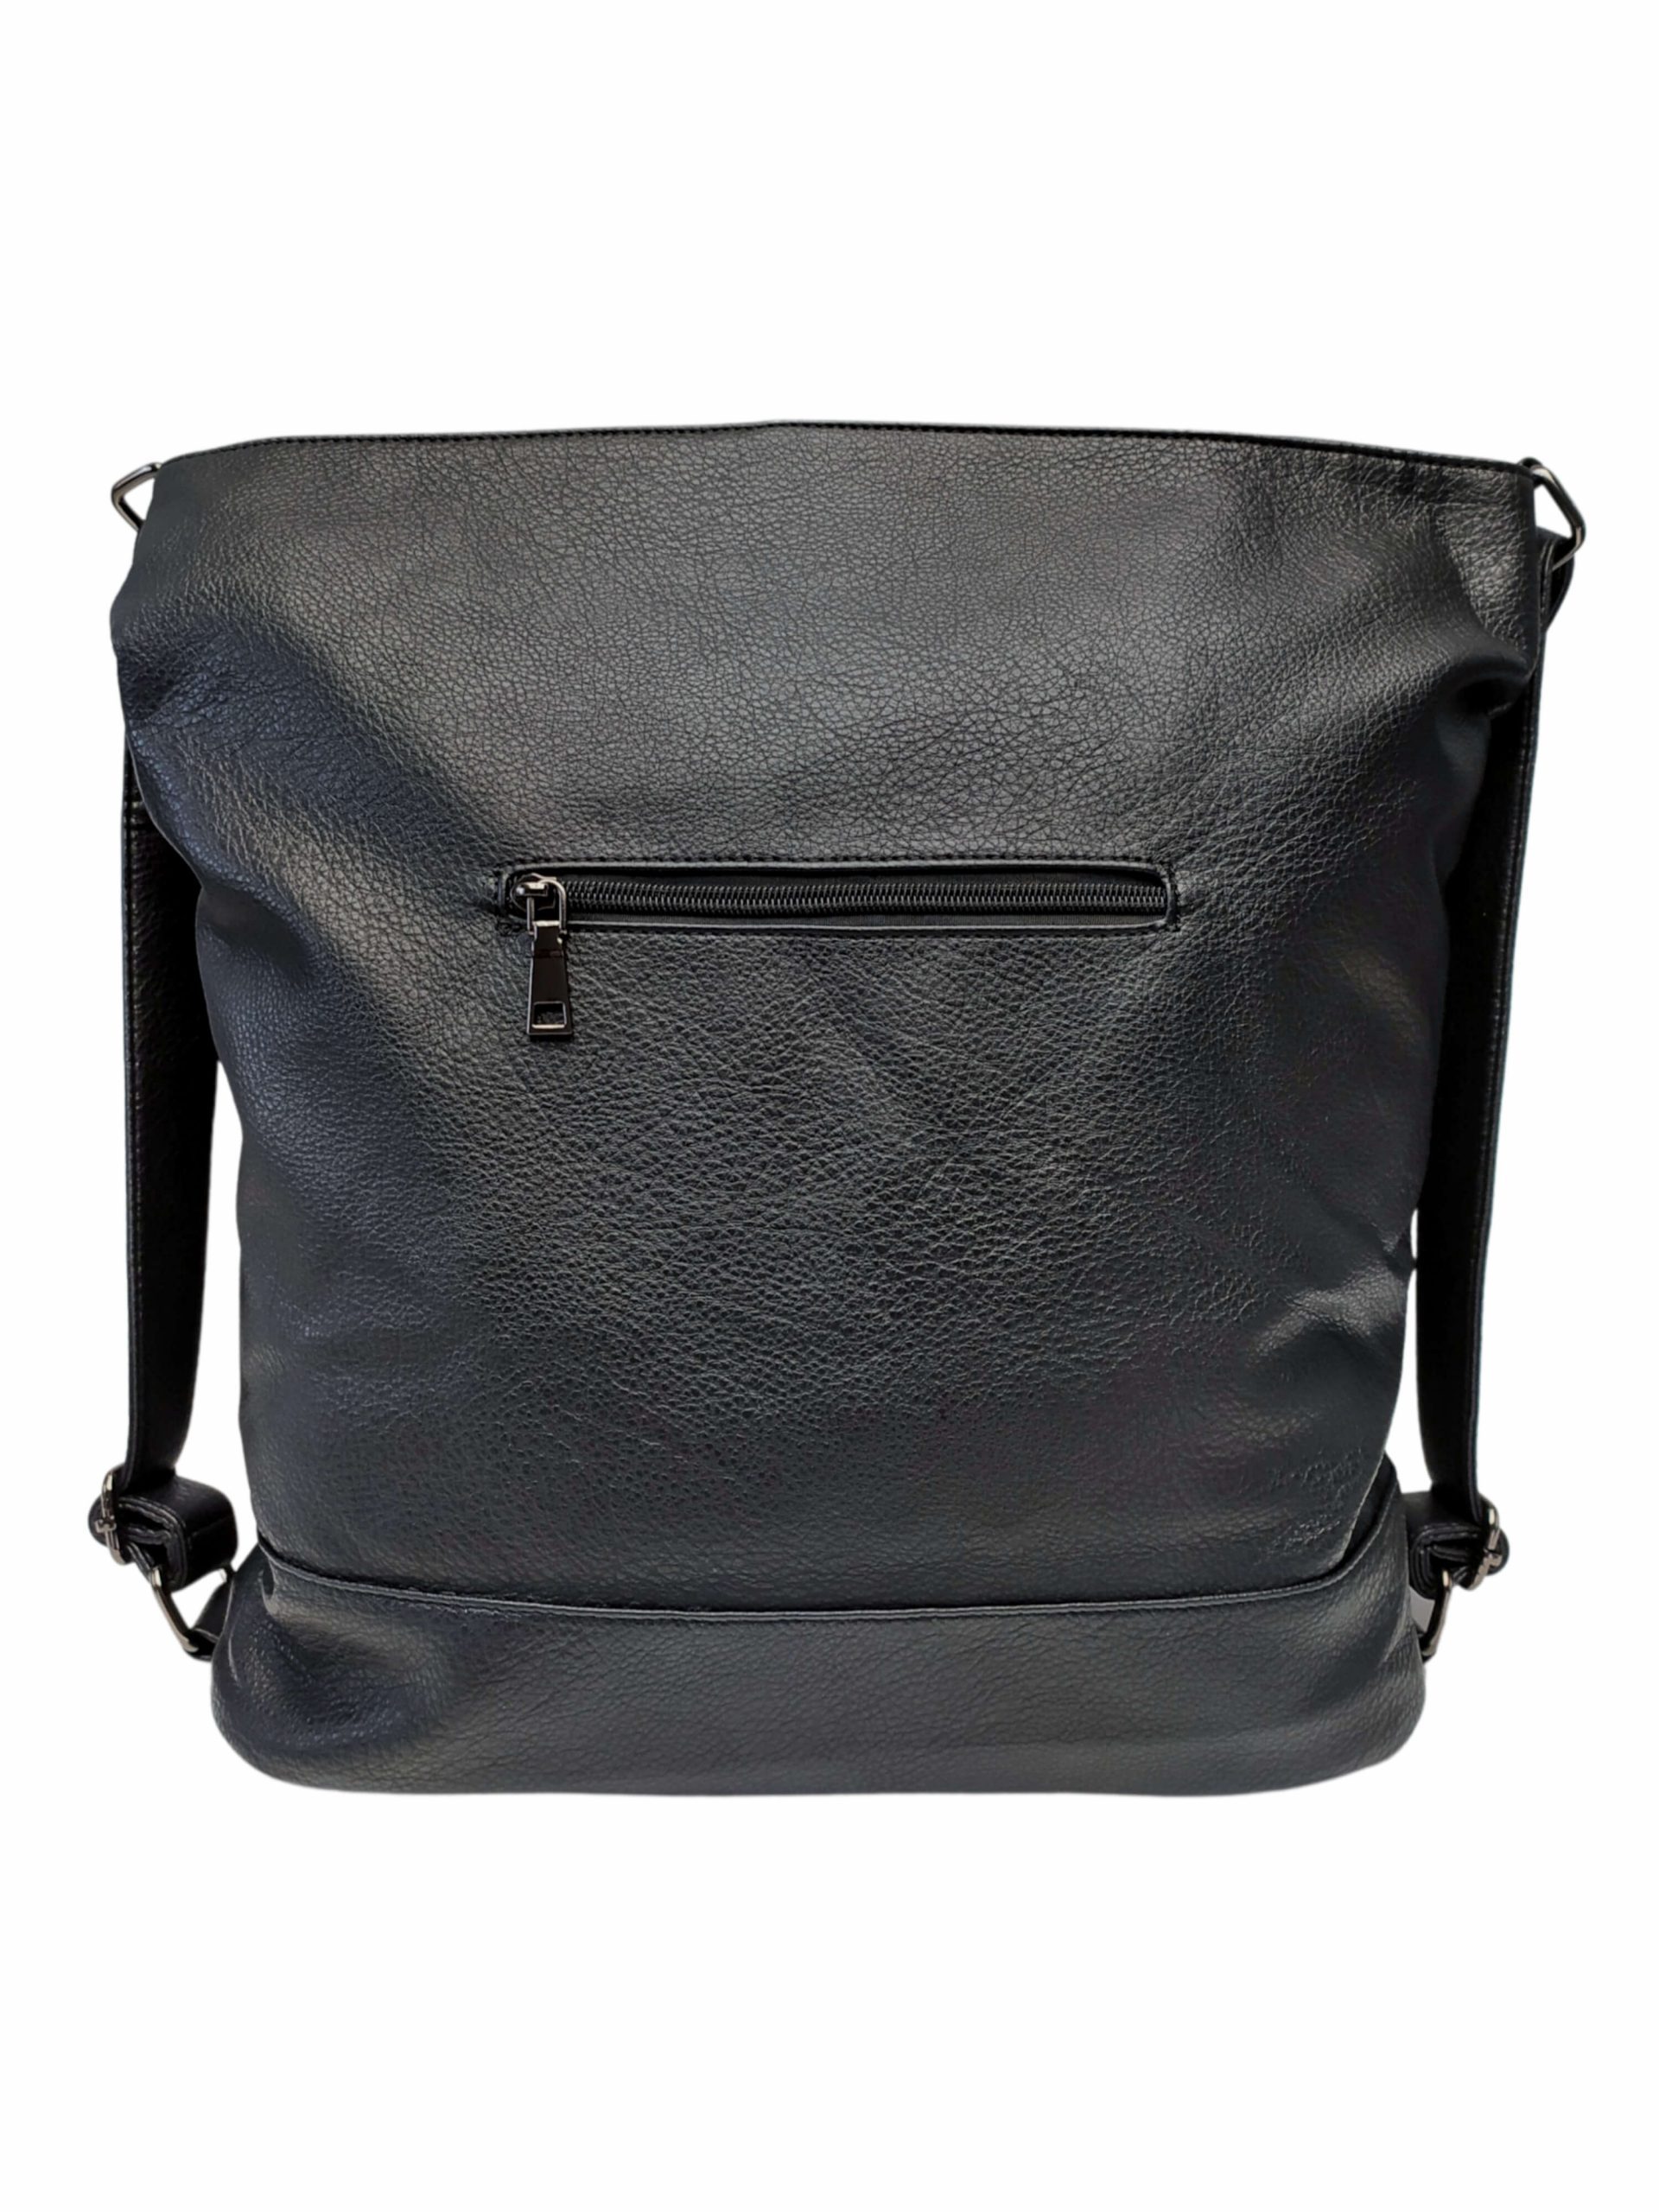 Velký černý kabelko-batoh 2v1 s šikmými vzory, Co & Coo Fashion, 0956, zadní strana kabelko-batohu 2v1